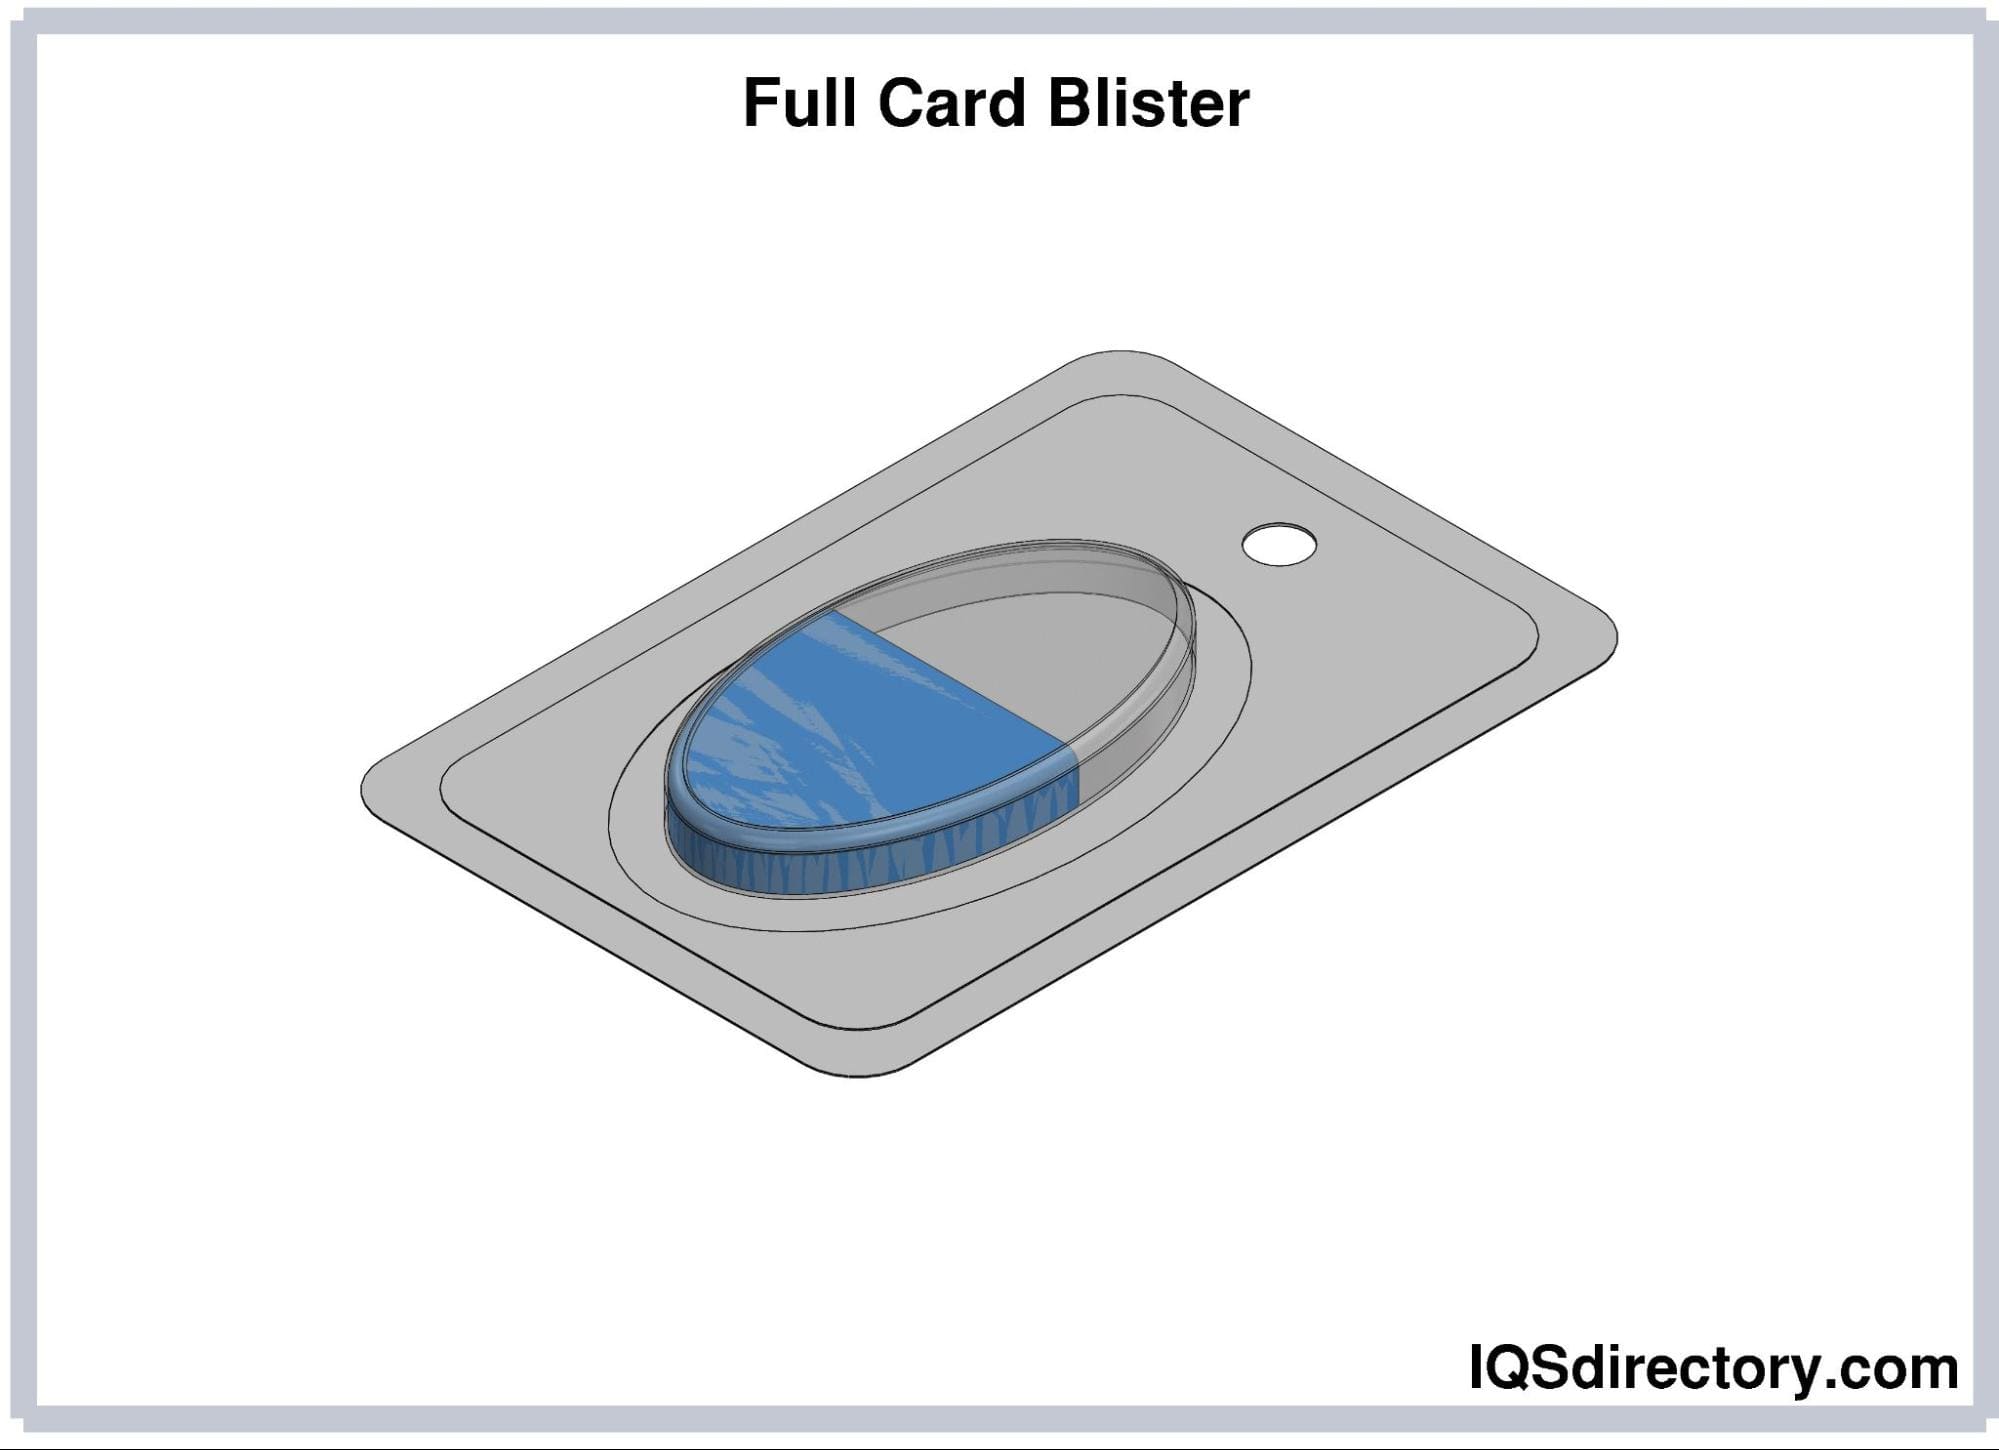 Full Card Blister